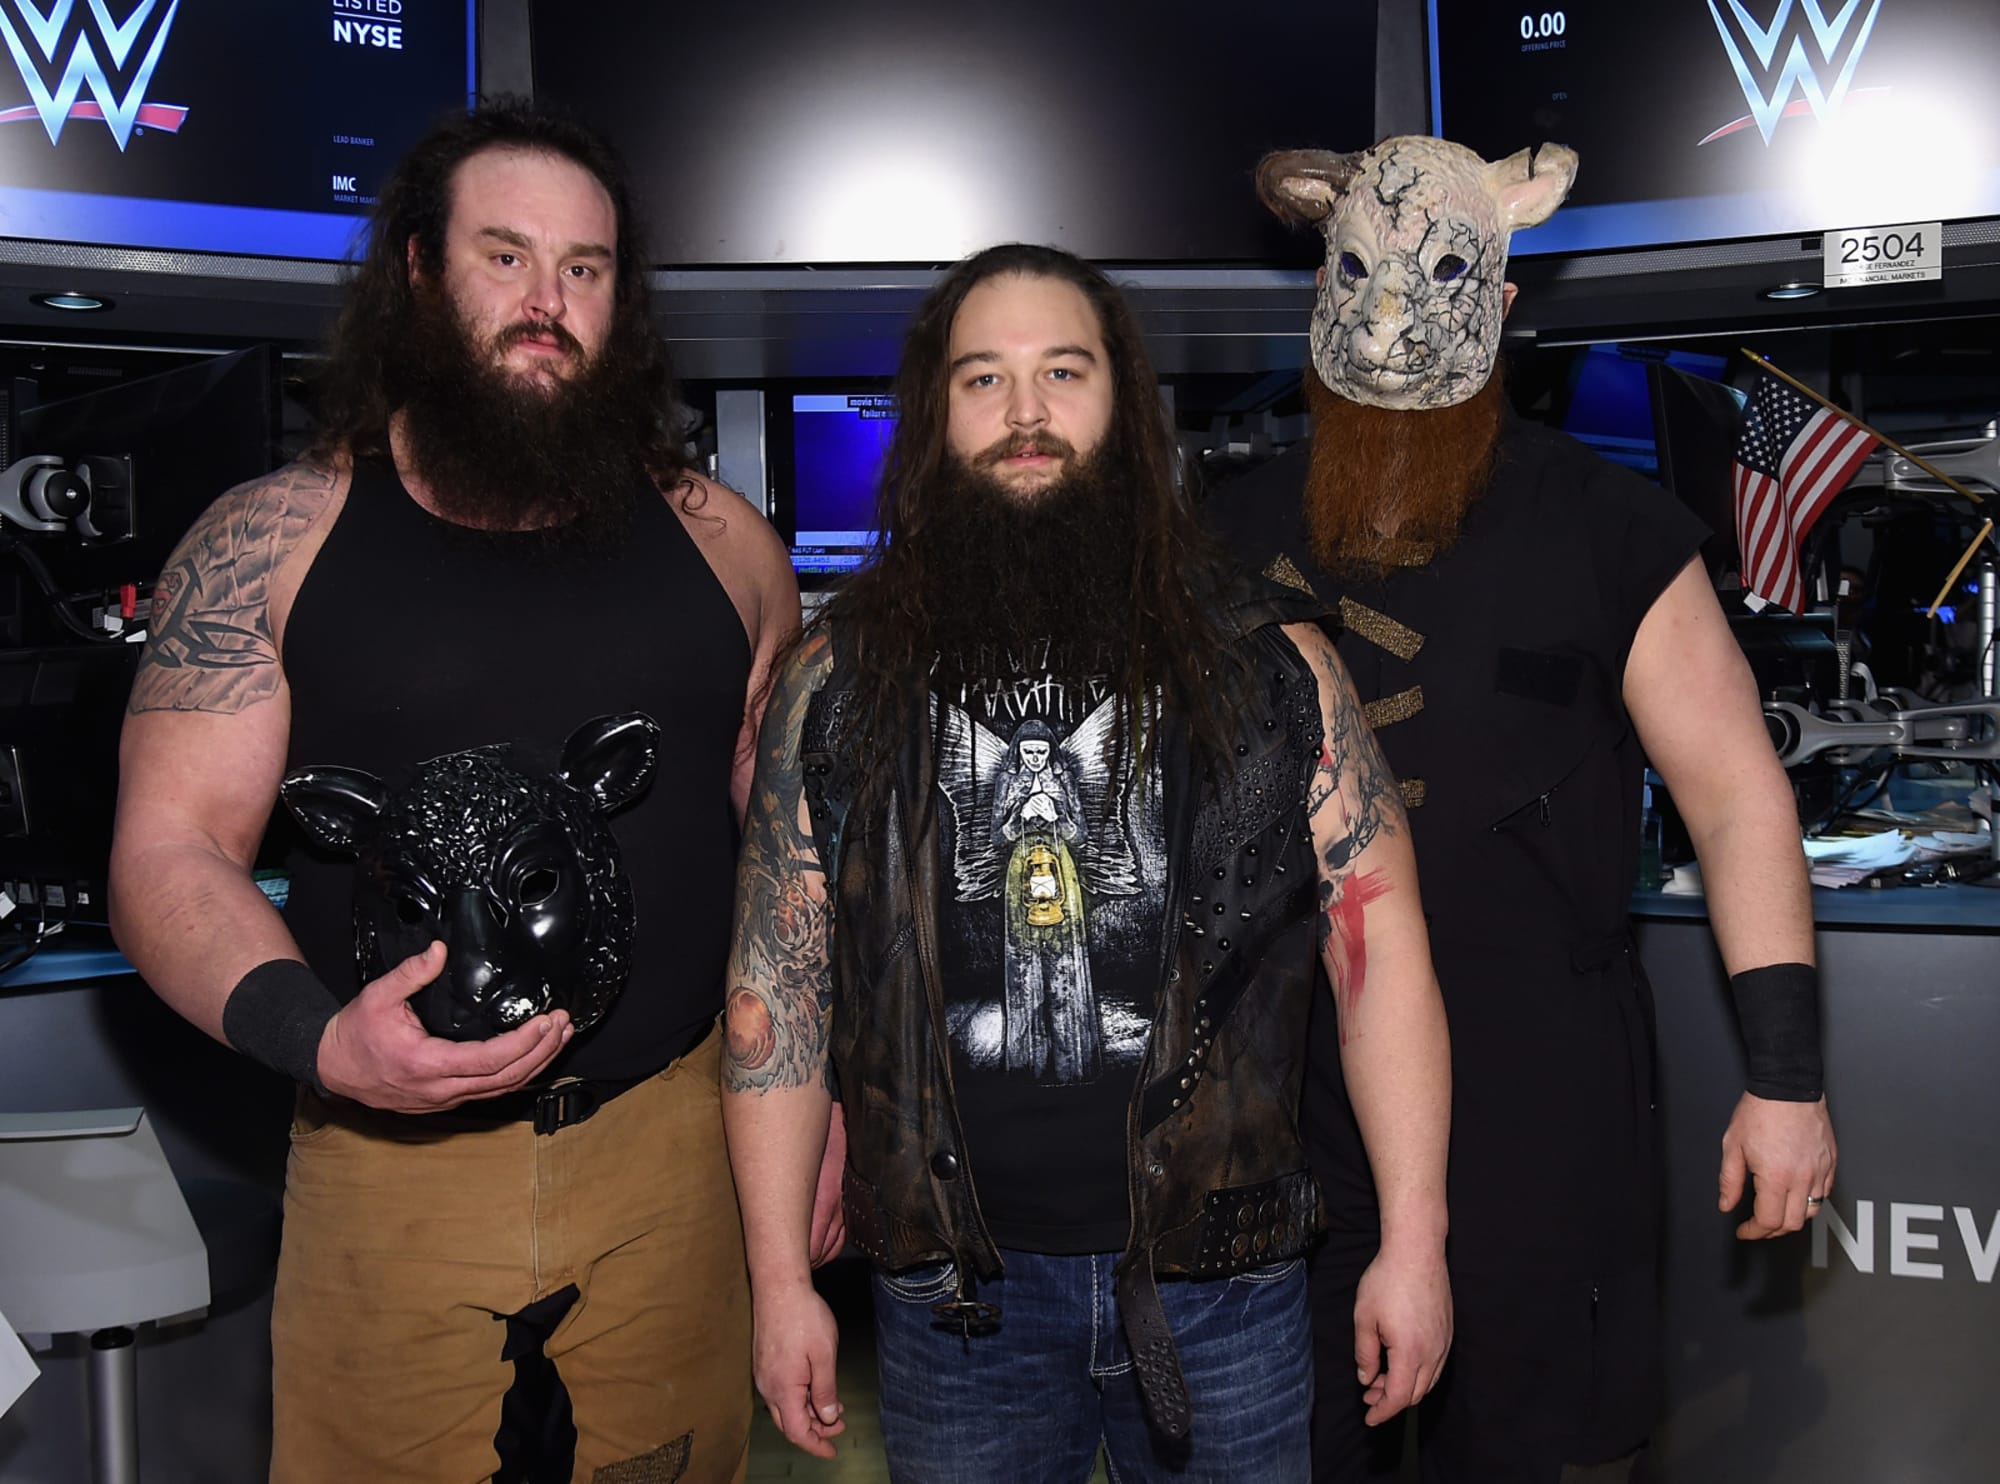 Bray Wyatt with the Wyatt Family.